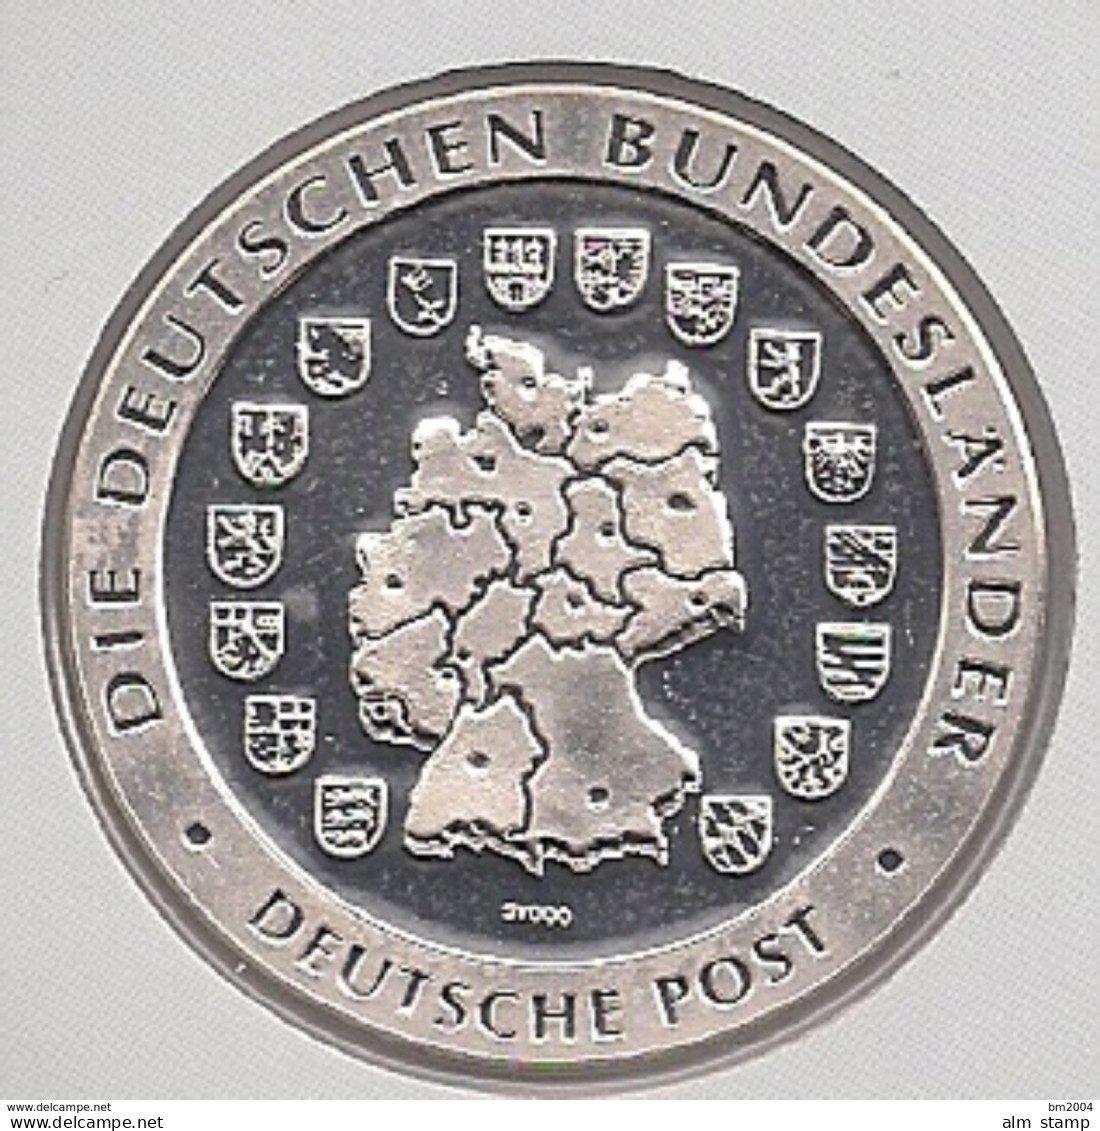 999/1000 Silber Medaille " Nordrhein-Westfalen  " PP   36 Mm DMR Rohgewicht : 14 G Prägung : Hochrelief - Souvenirmunten (elongated Coins)